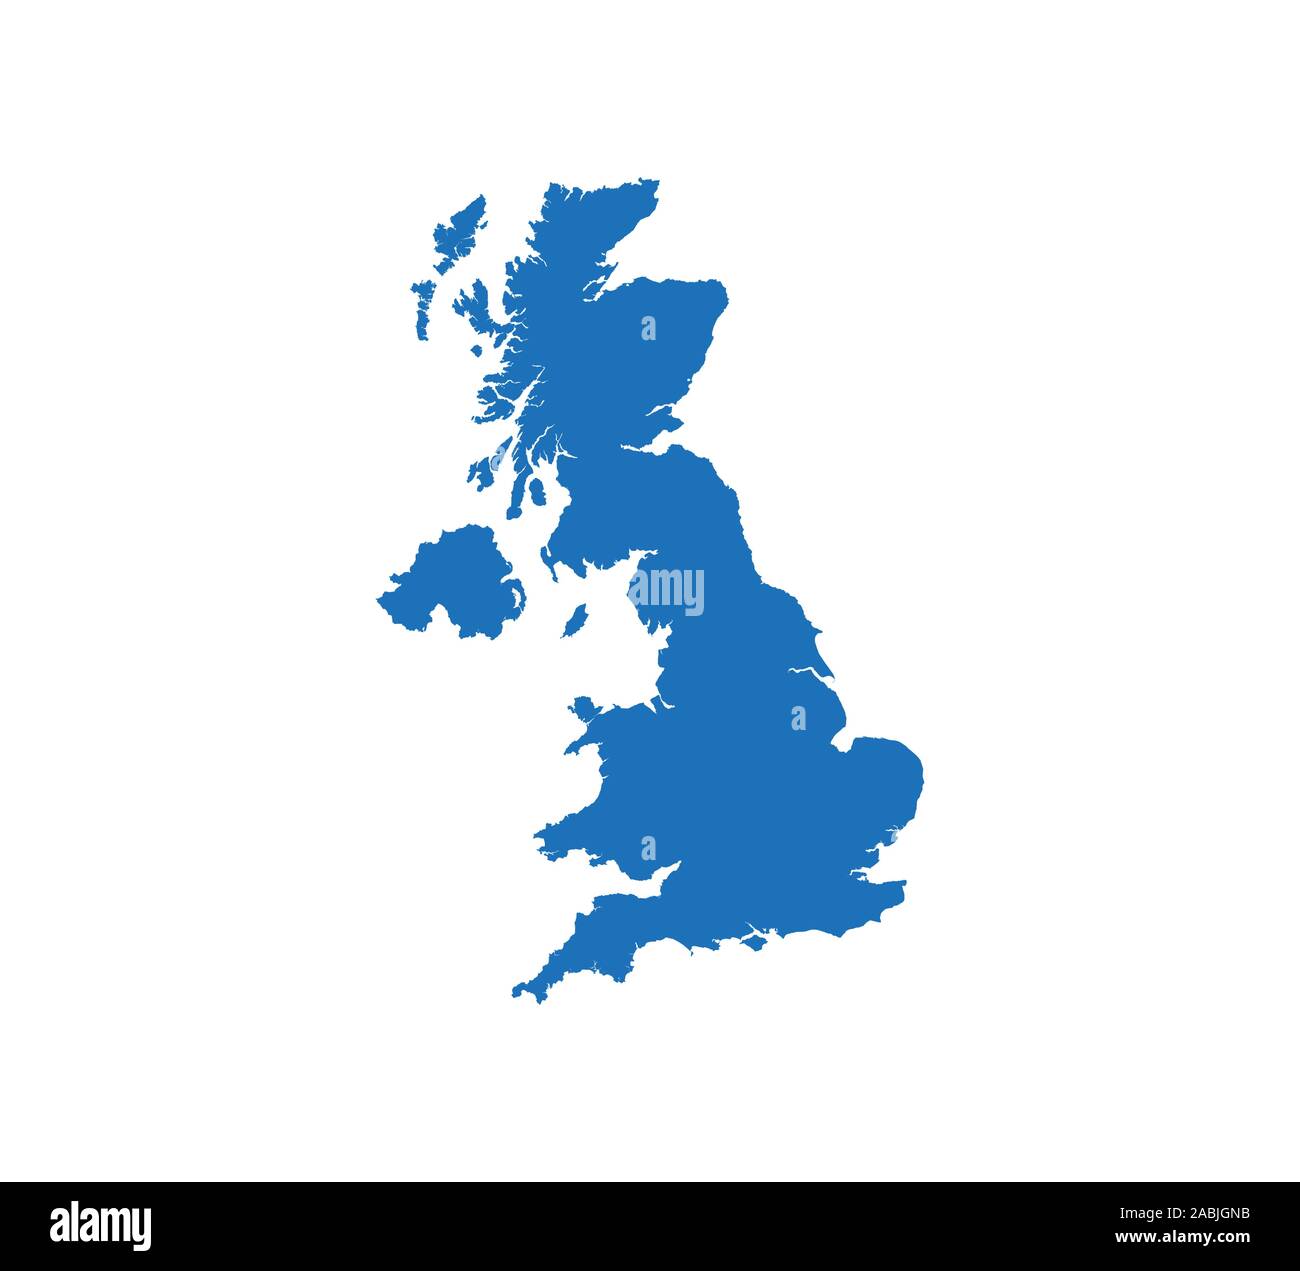 Royaume-uni carte sur fond blanc. Vector illustration. Illustration de Vecteur